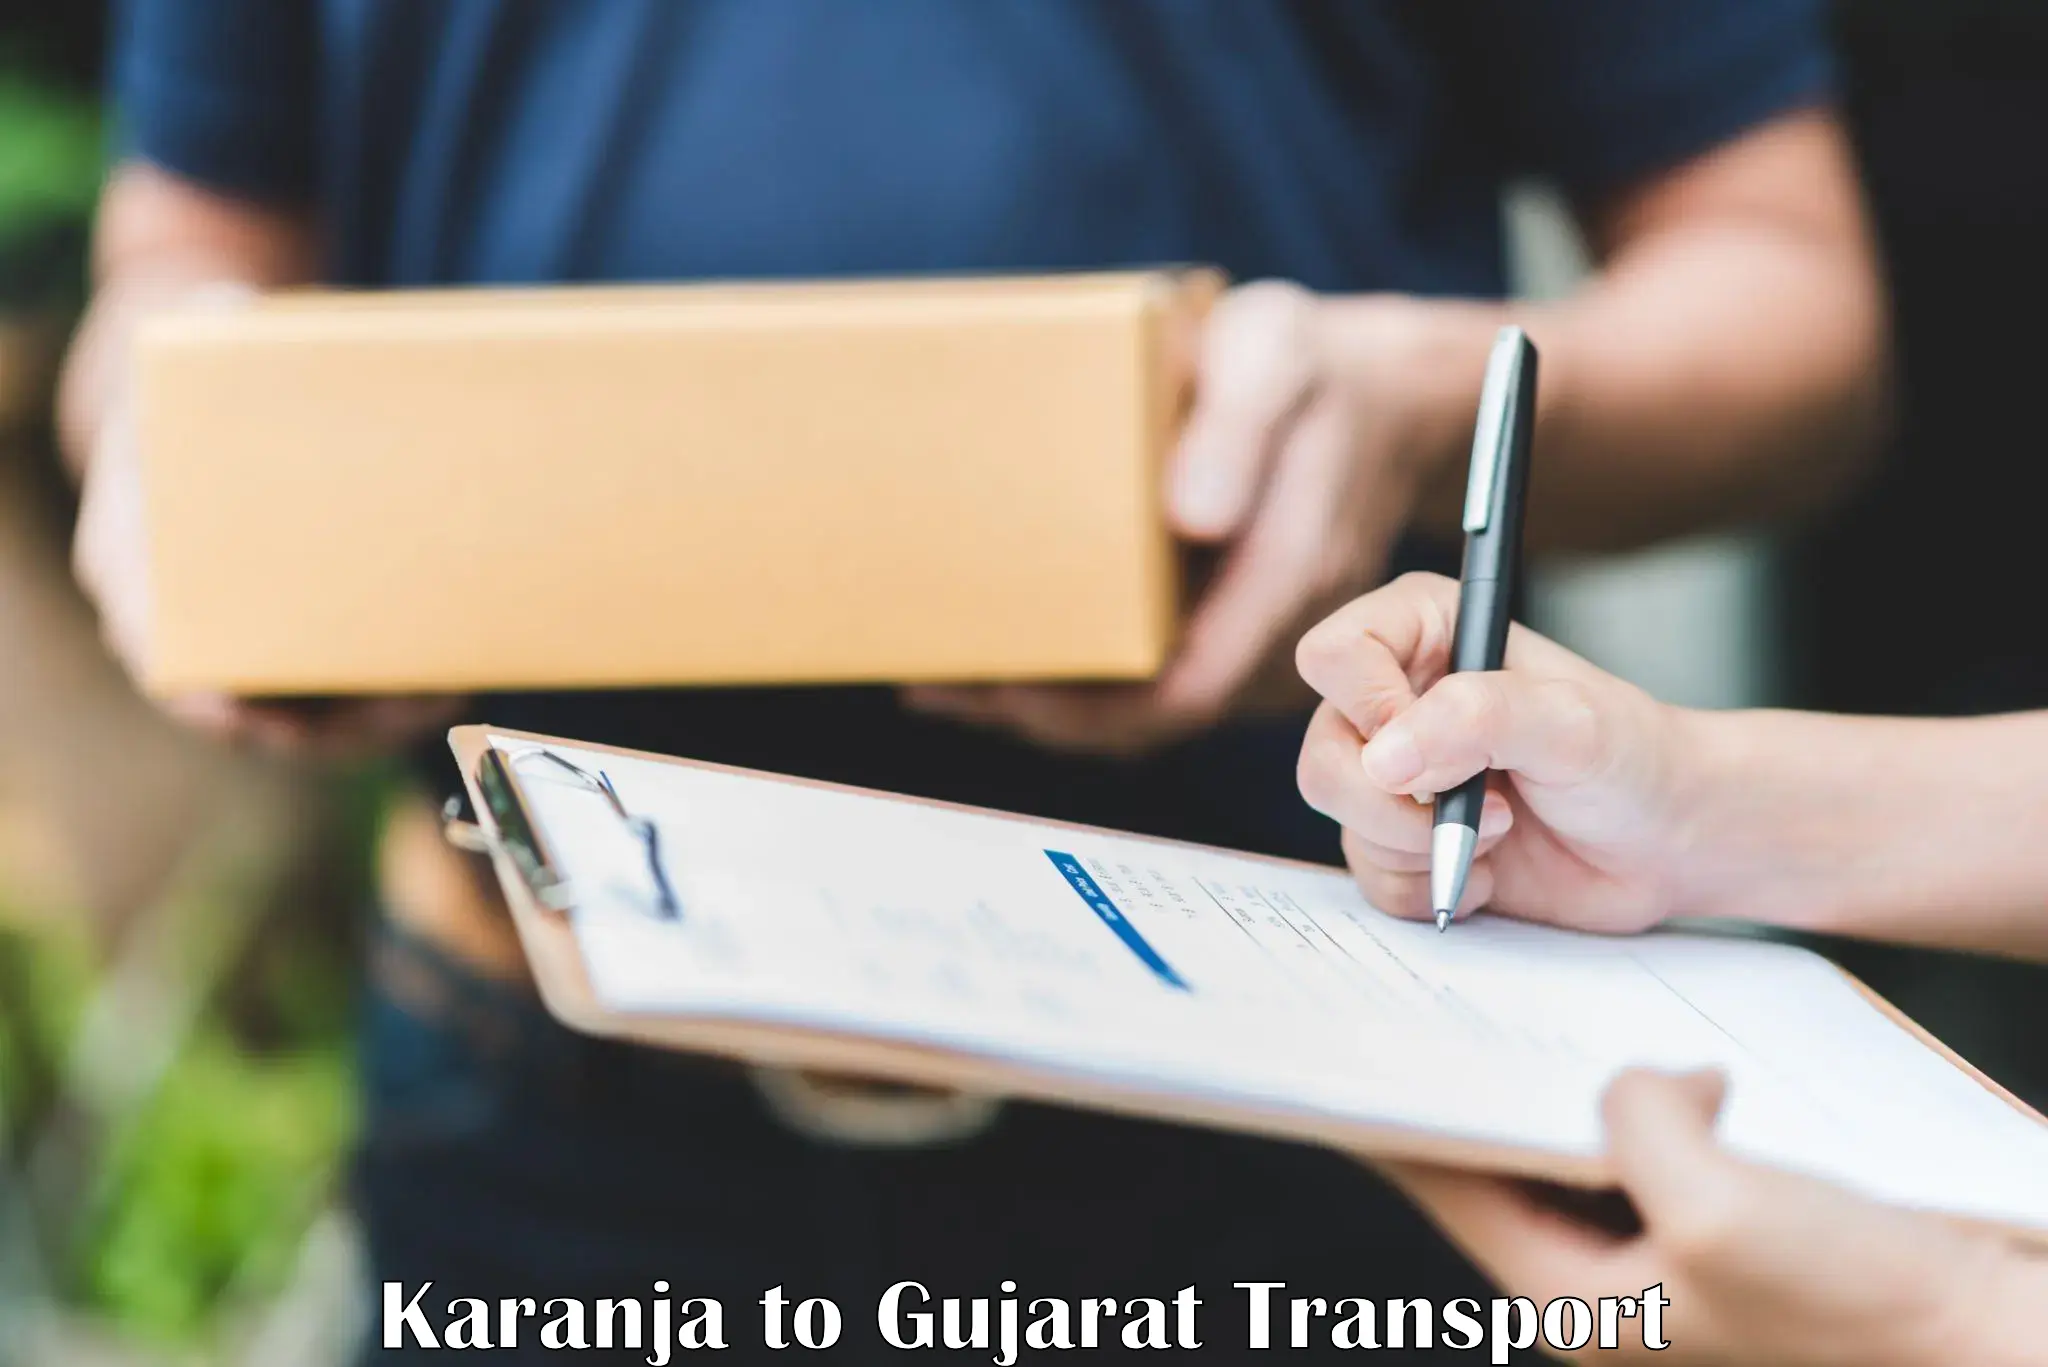 Nationwide transport services in Karanja to Bhatiya